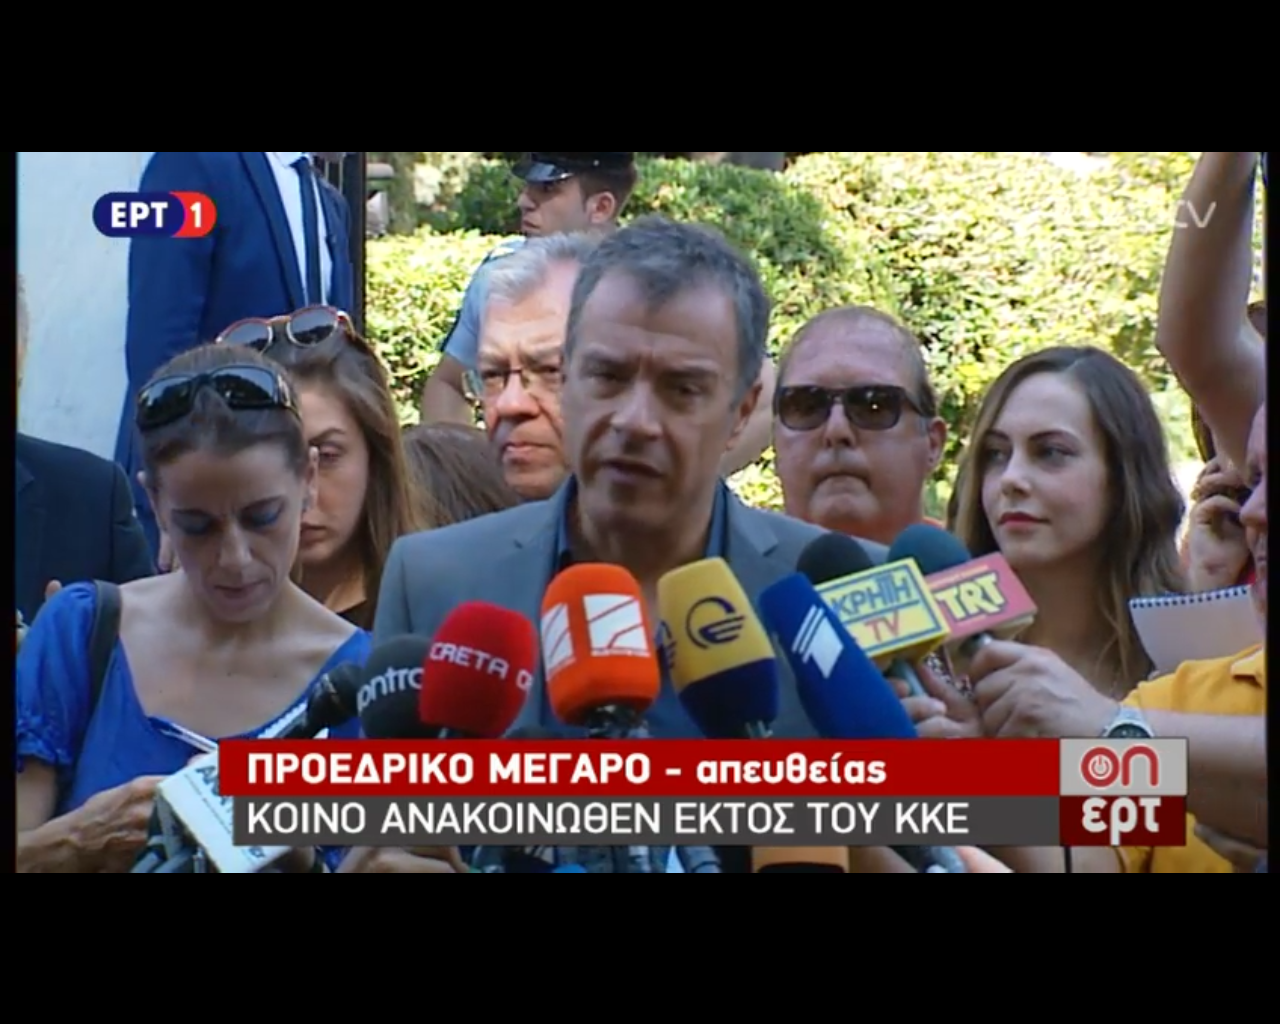 Σ. Θεοδωράκης: Ο Πρωθυπουργός έντιμα μας είπε τις προτάσεις που σκέφτεται να κάνει στην Ευρώπη